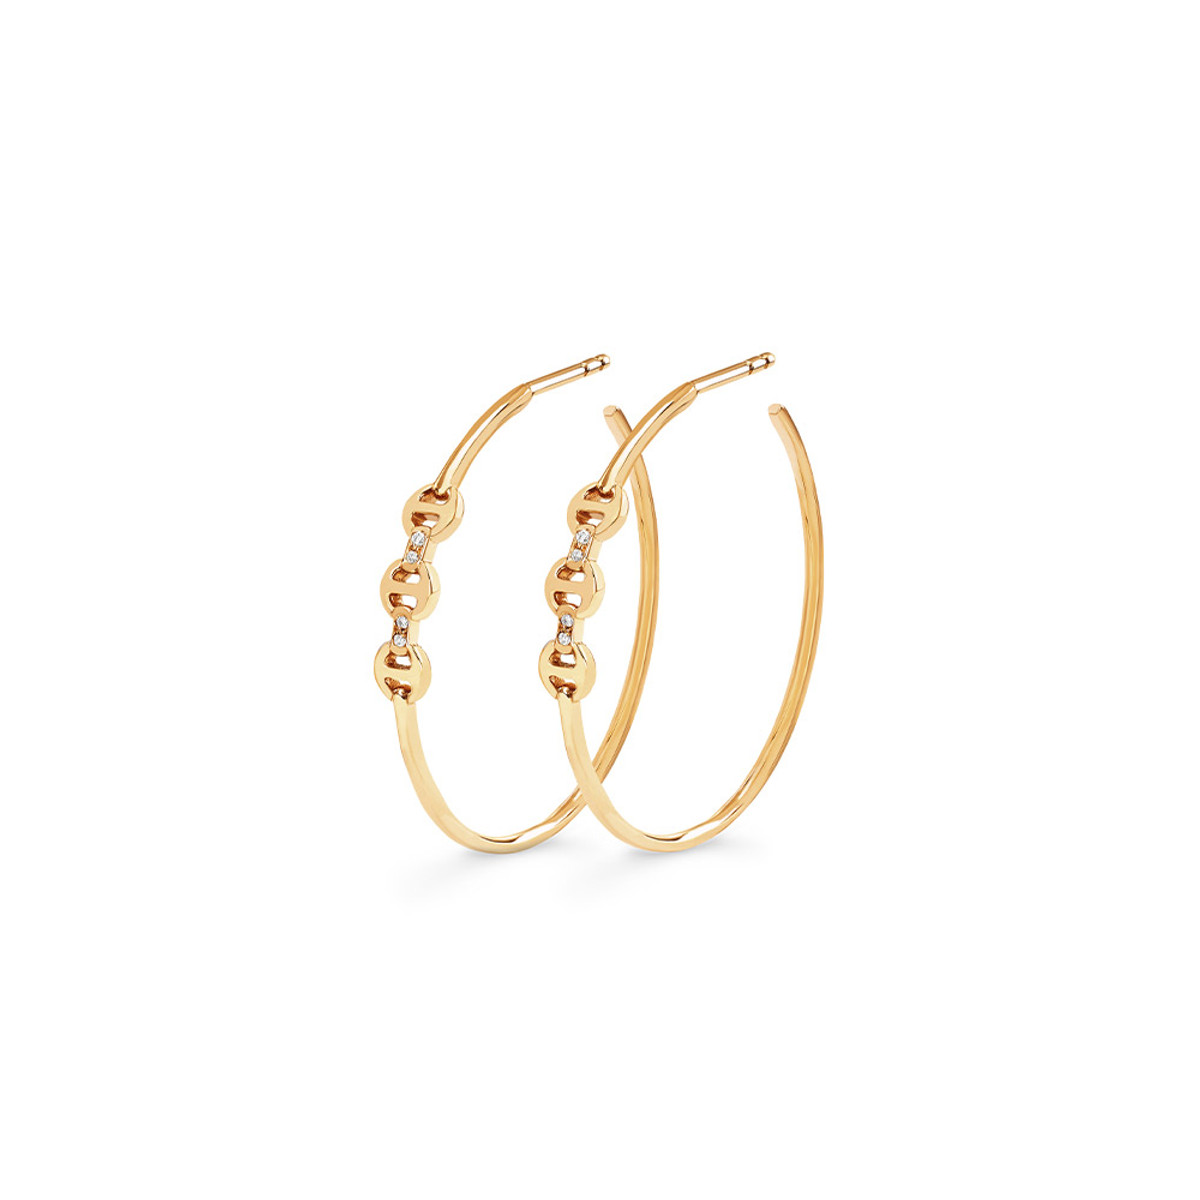 Hoorsenbuhs 18K Yellow Gold Hoops Earrings with Mini Diamond Bridges-57473 Product Image